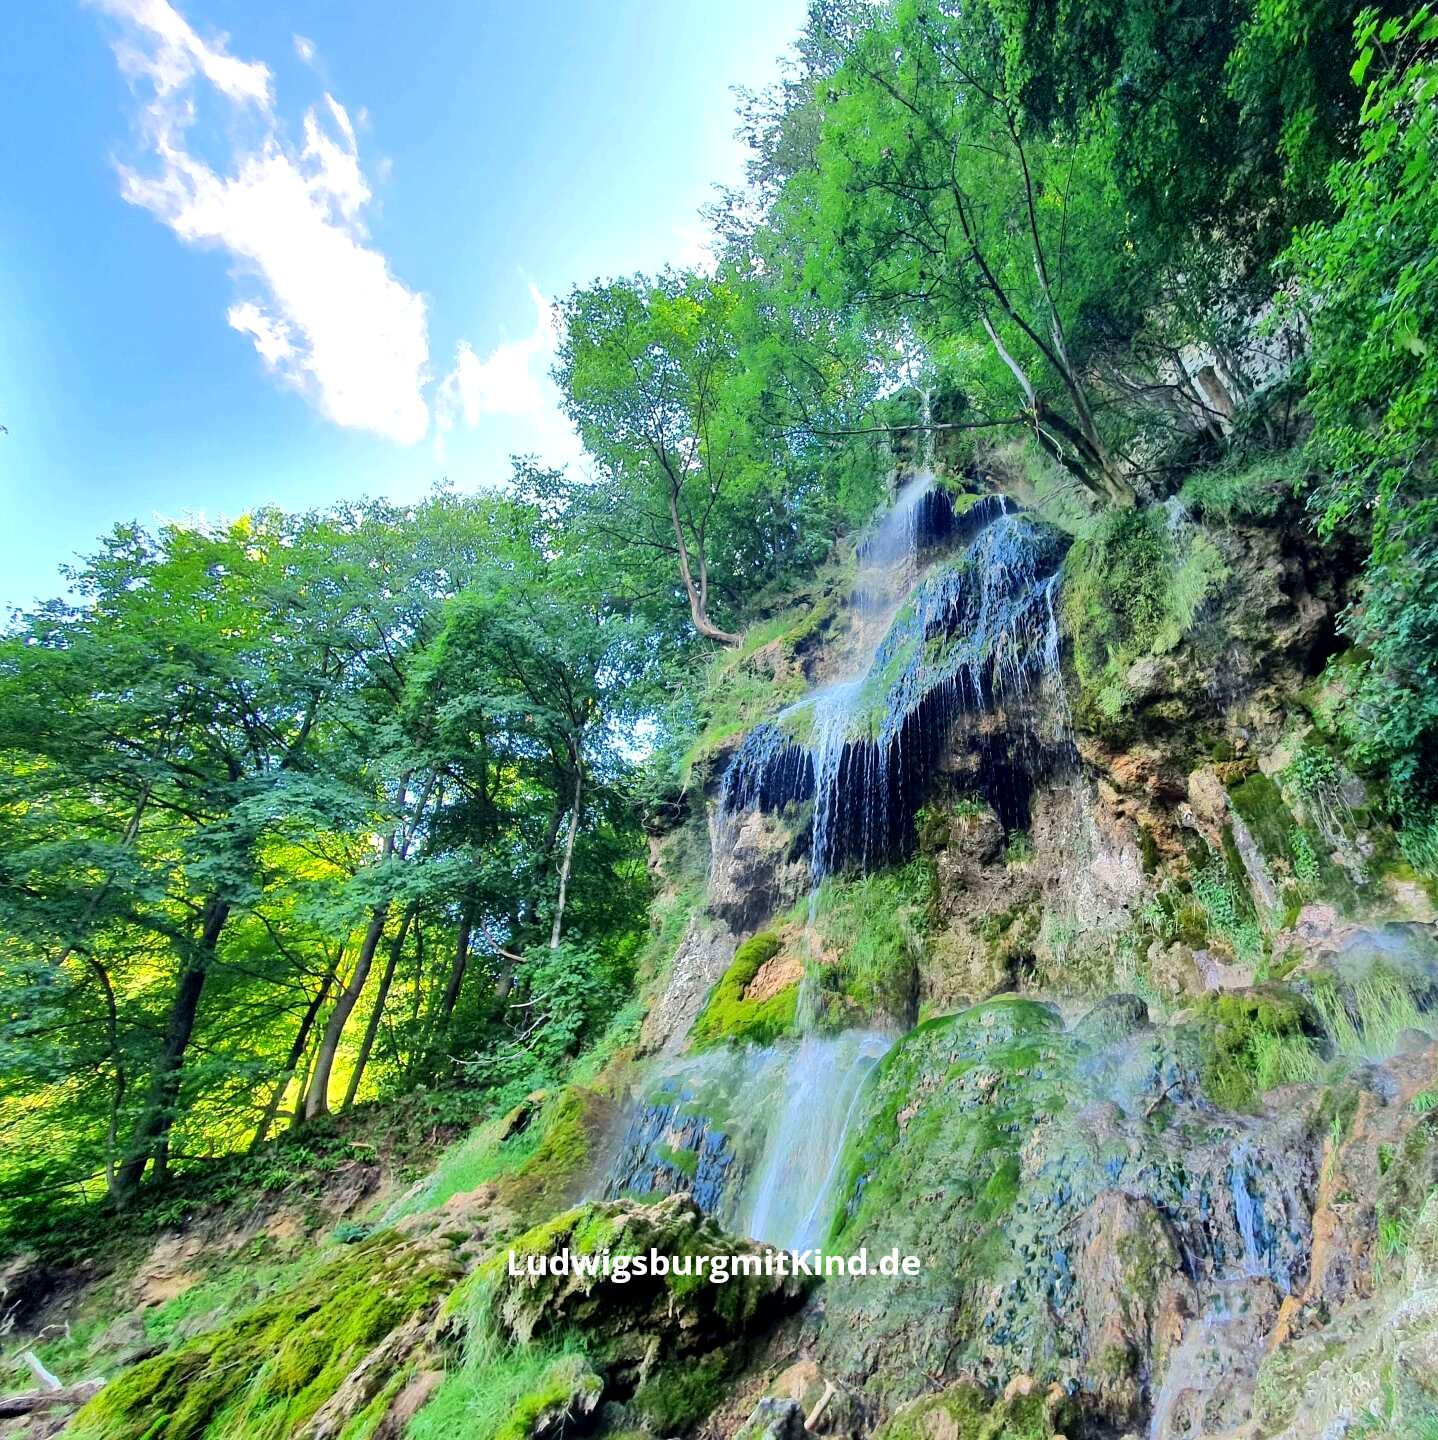 Der größte Wasserfall in Bad Urach, ein beliebtes Ausflugsziel für Familien mit Kindern auf der Schwäbischen Alb.